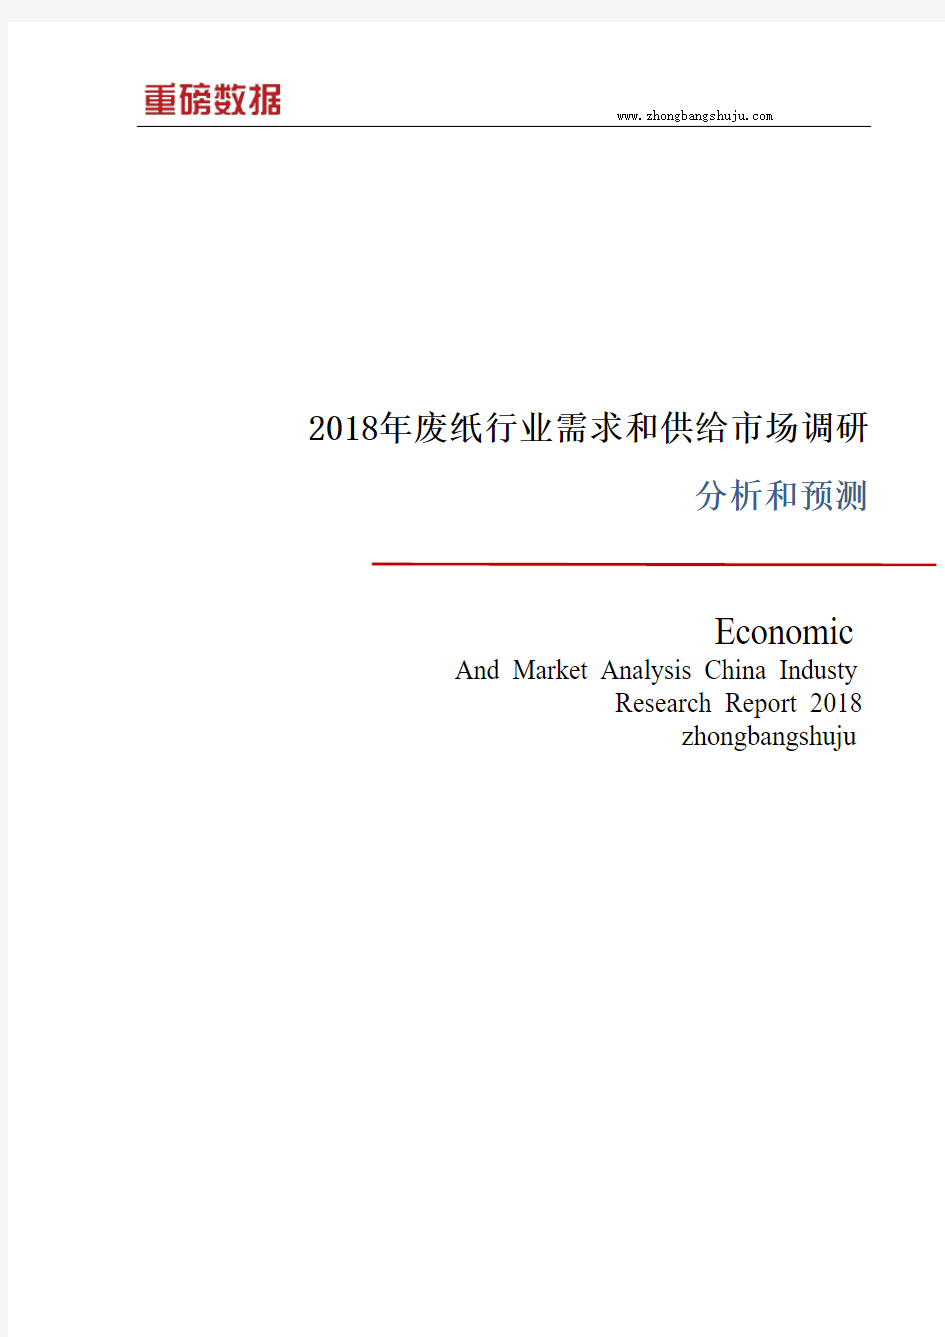 2018年废纸行业需求和供给市场调研分析报告1